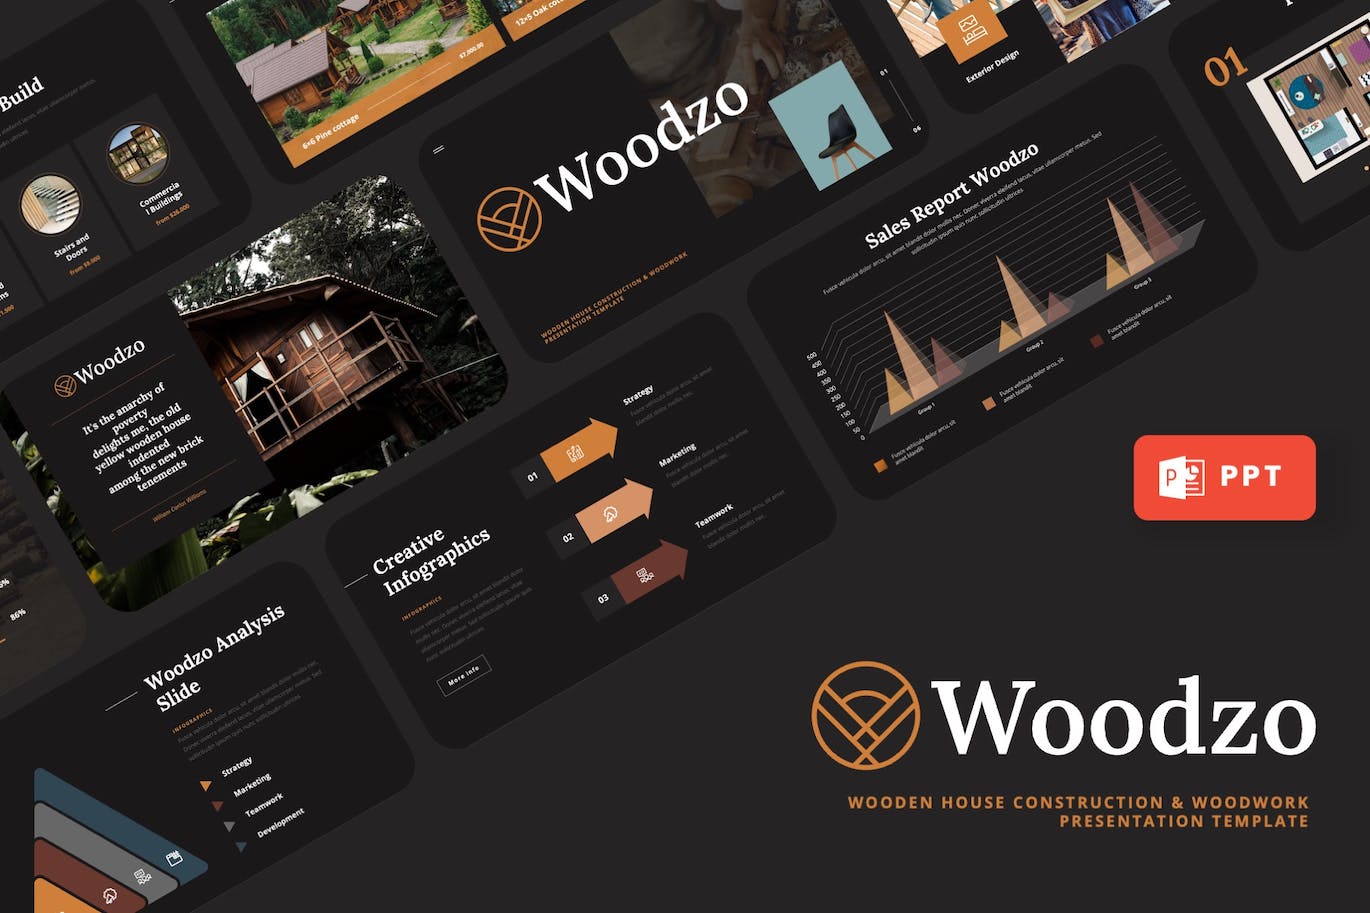 木屋房子建造PPT幻灯片模板下载 Woodzo – Wooden House Powerpoint Template 幻灯图表 第1张